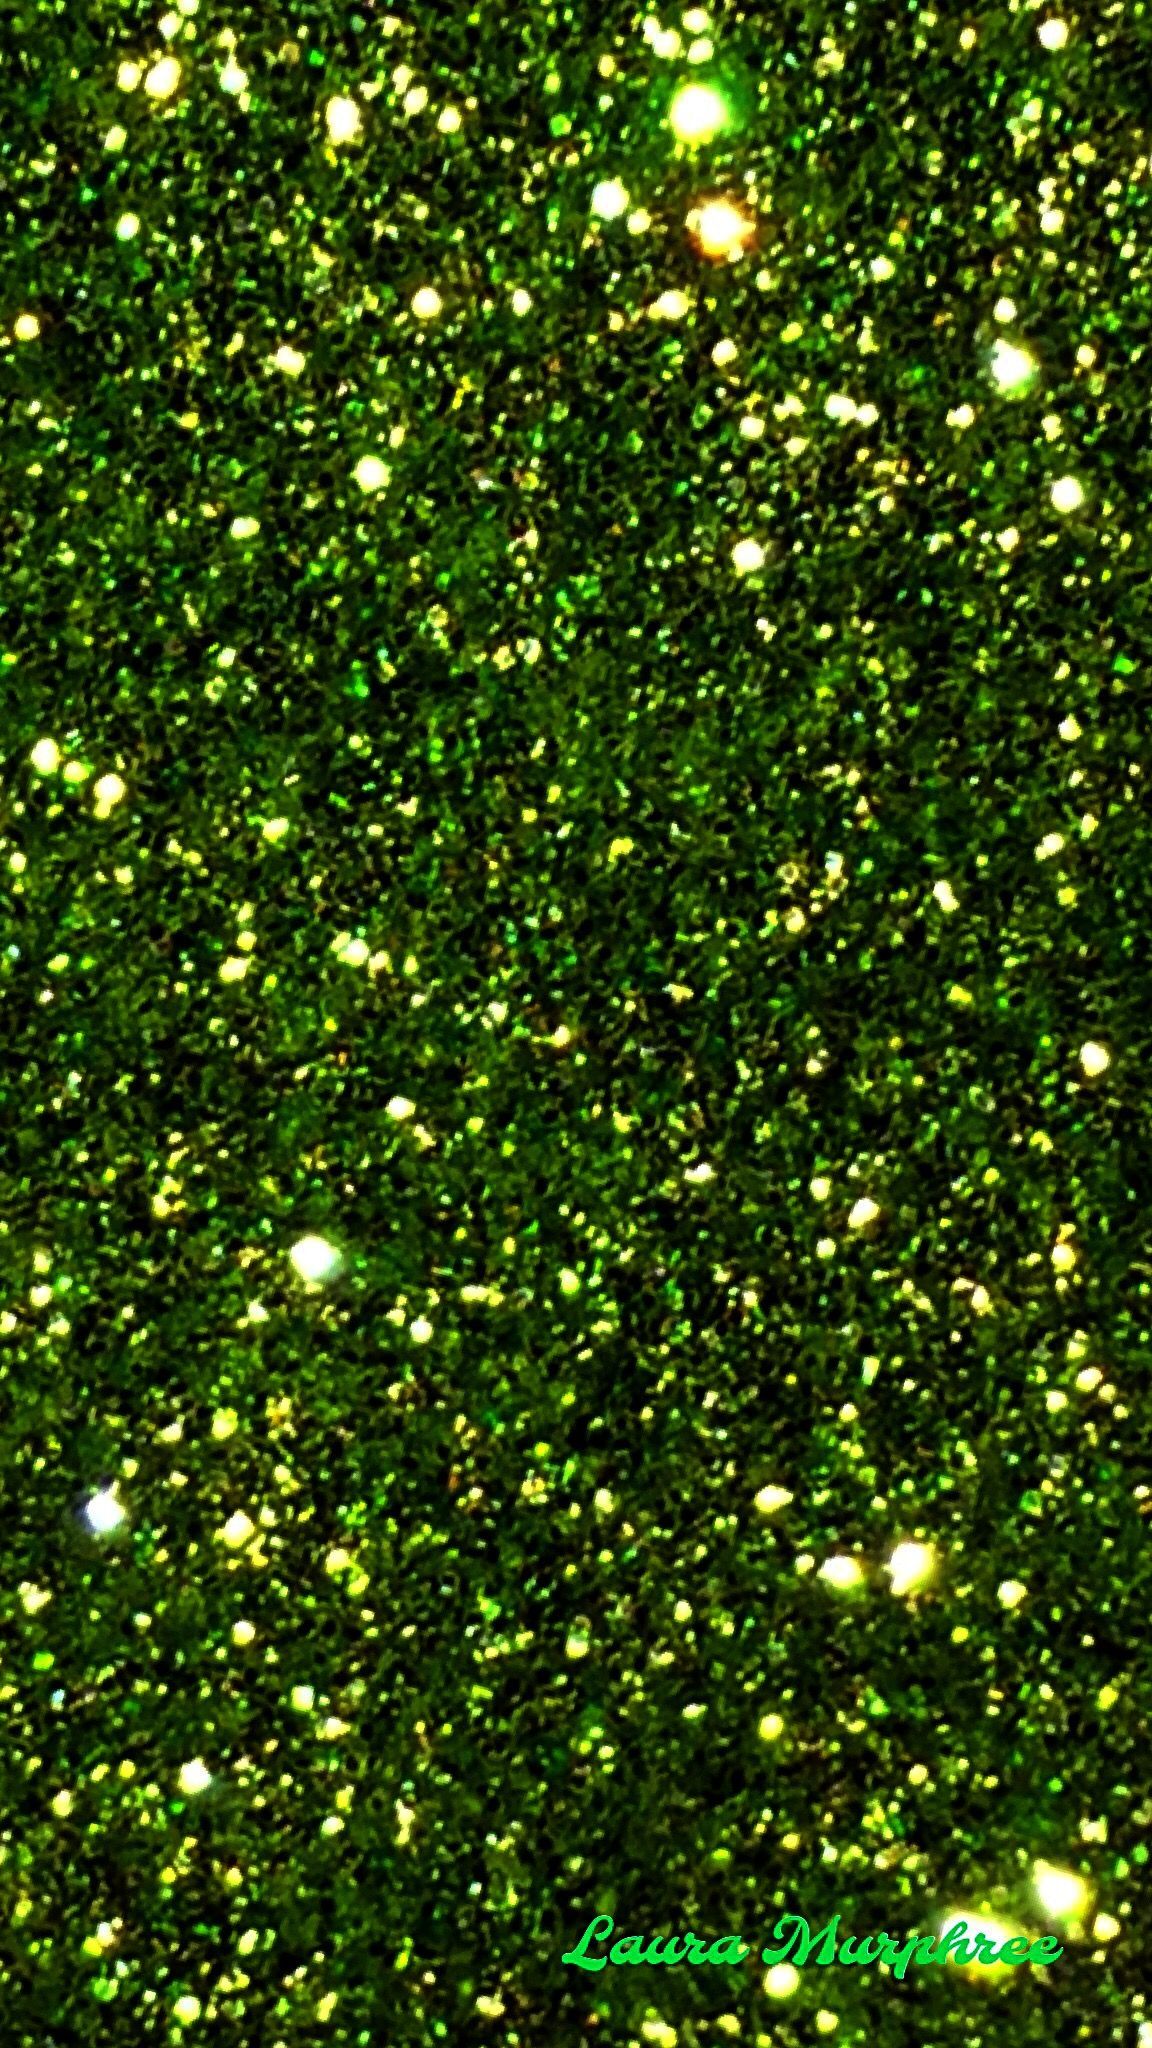 Glitter phone wallpaper Glitter phone wallpaper sparkle background sparkling glittery shimmer girly pretty. Green aesthetic, Glitter background, Glitter wallpaper